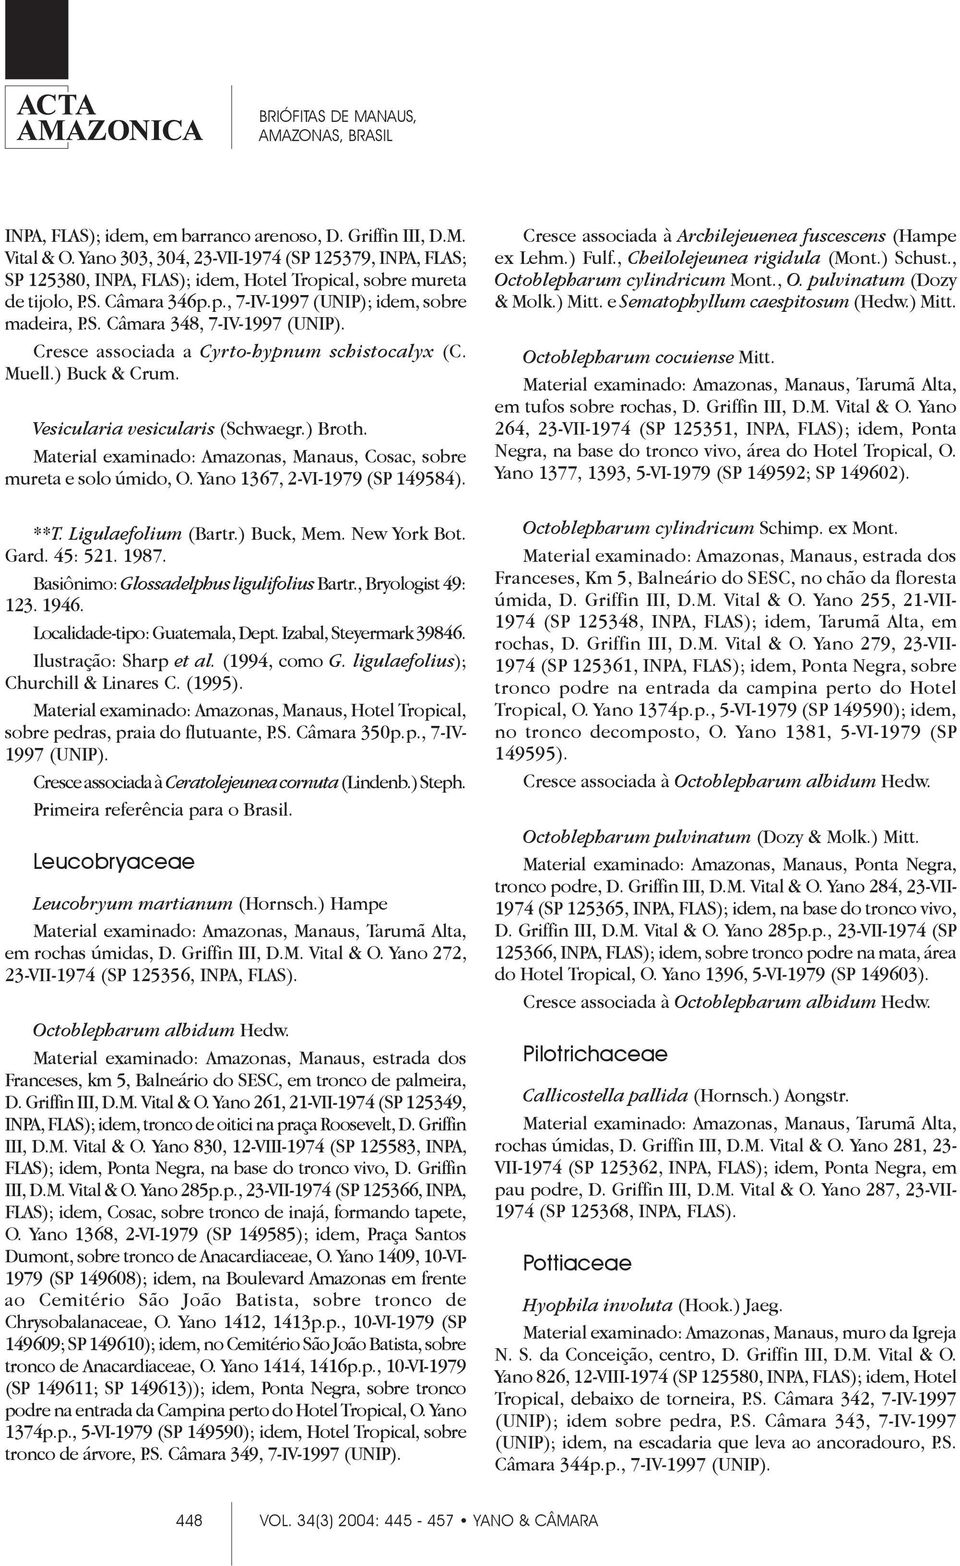 Material examinado: Amazonas, Manaus, Cosac, sobre mureta e solo úmido, O. Yano 1367, 2-VI-1979 (SP 149584). **T. Ligulaefolium (Bartr.) Buck, Mem. New York Bot. Gard. 45: 521. 1987.